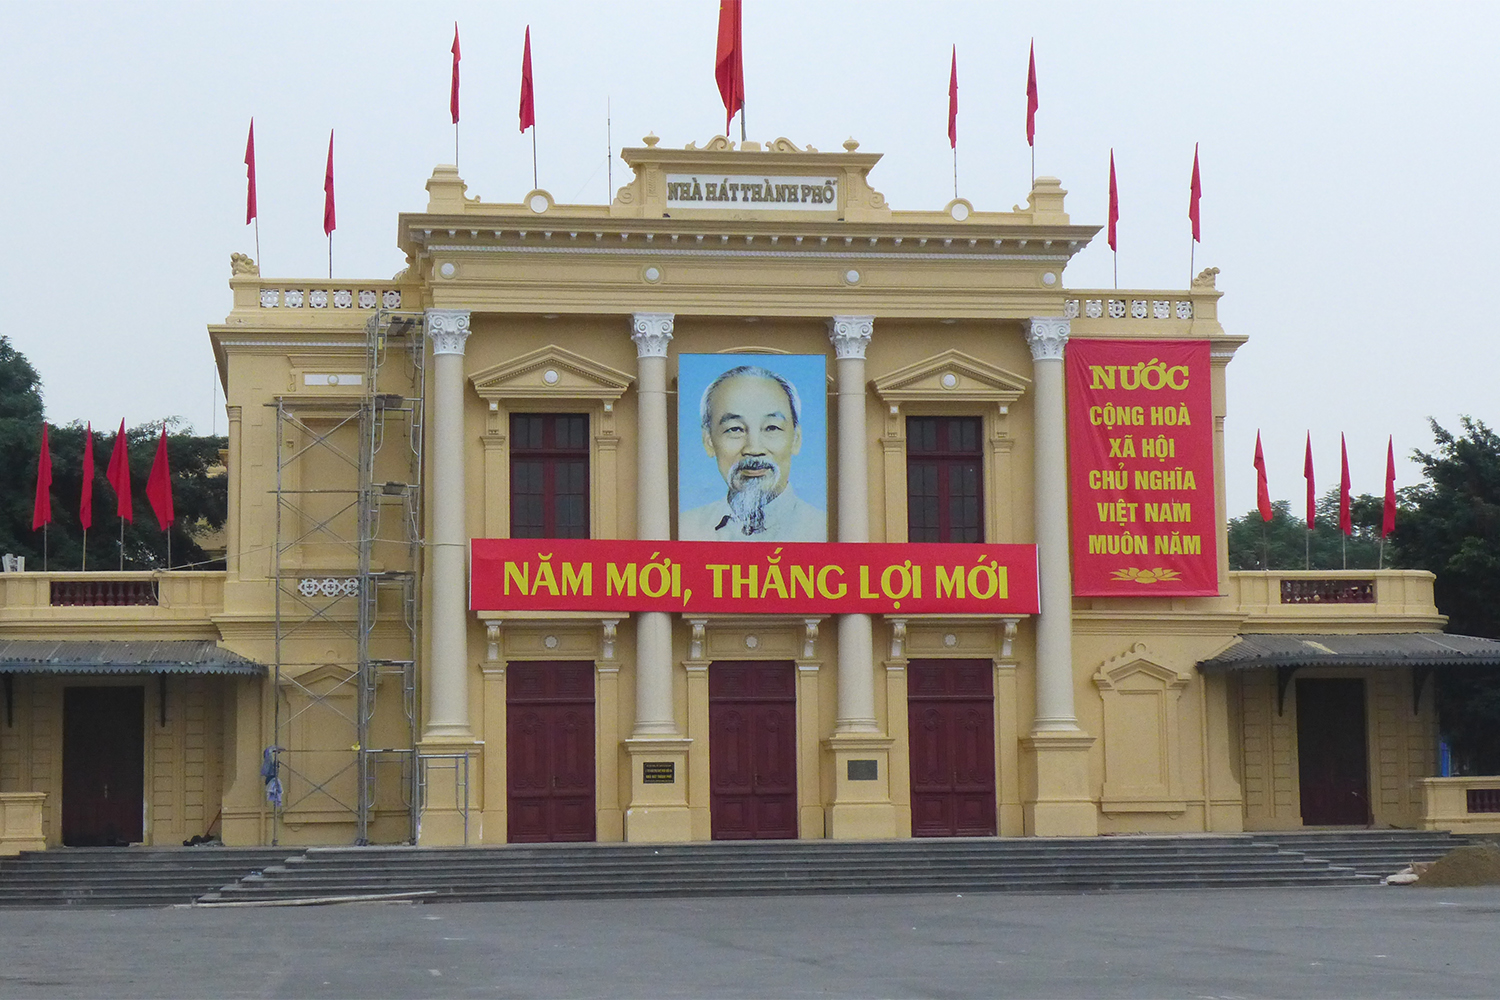 A Haiphong, sur la place principale. L’oncle Hô, tel qu’on appelle ici Hô Chi Minh, le fondateur du pays, est omniprésent.